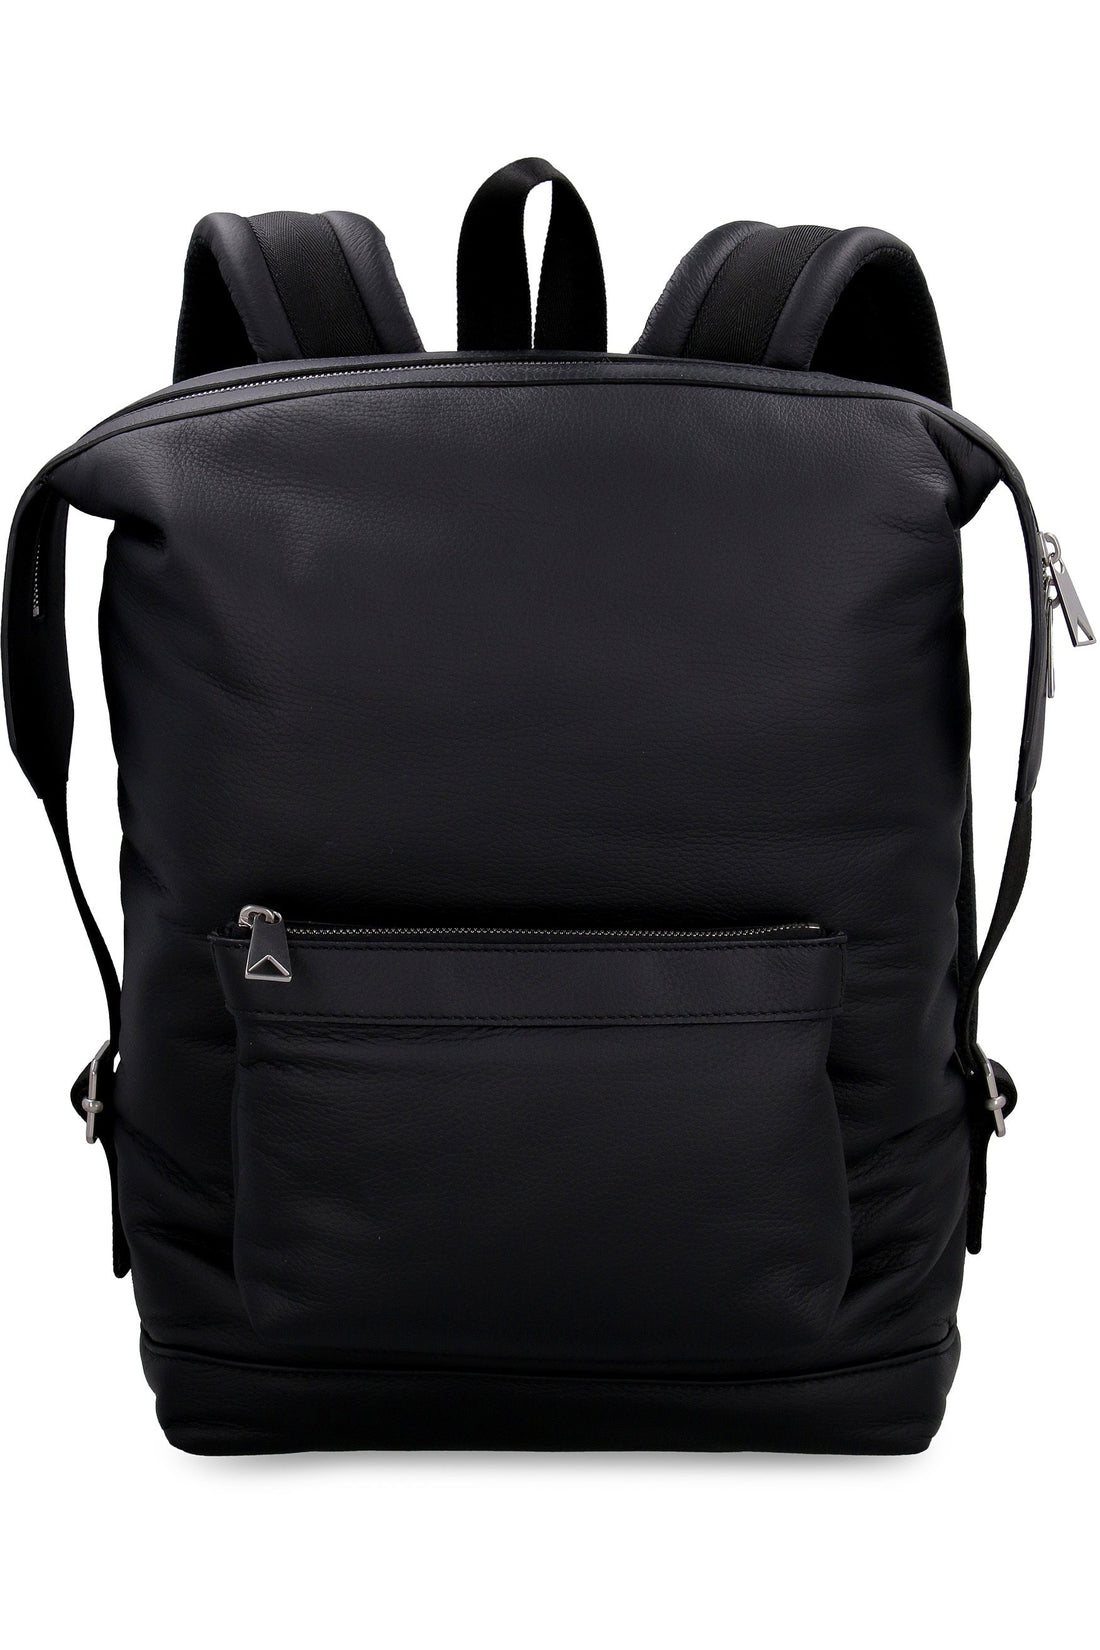 Bottega Veneta-OUTLET-SALE-Leather backpack-ARCHIVIST